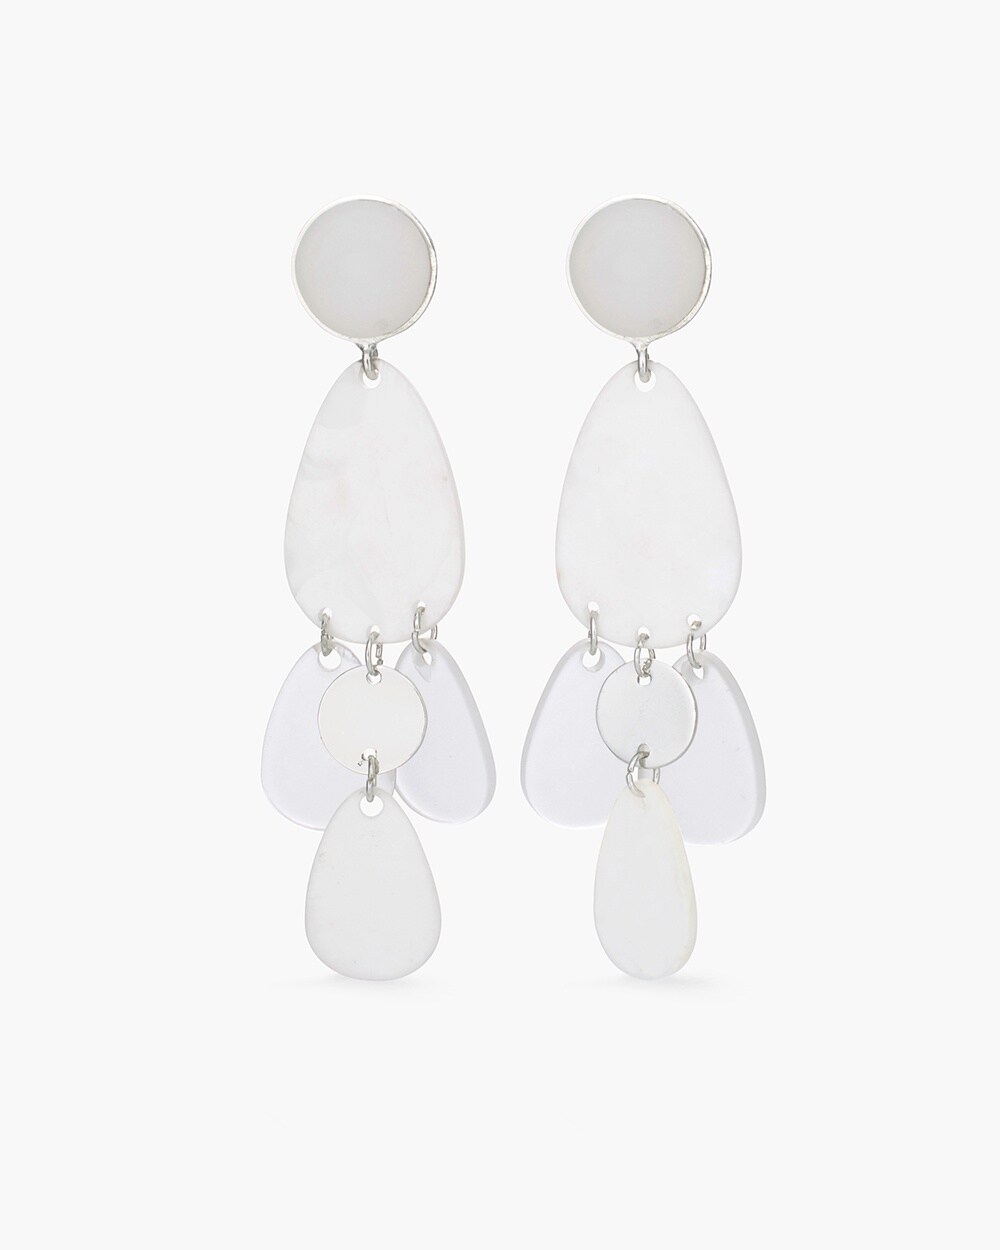 White Seaglass Chandelier Earrings